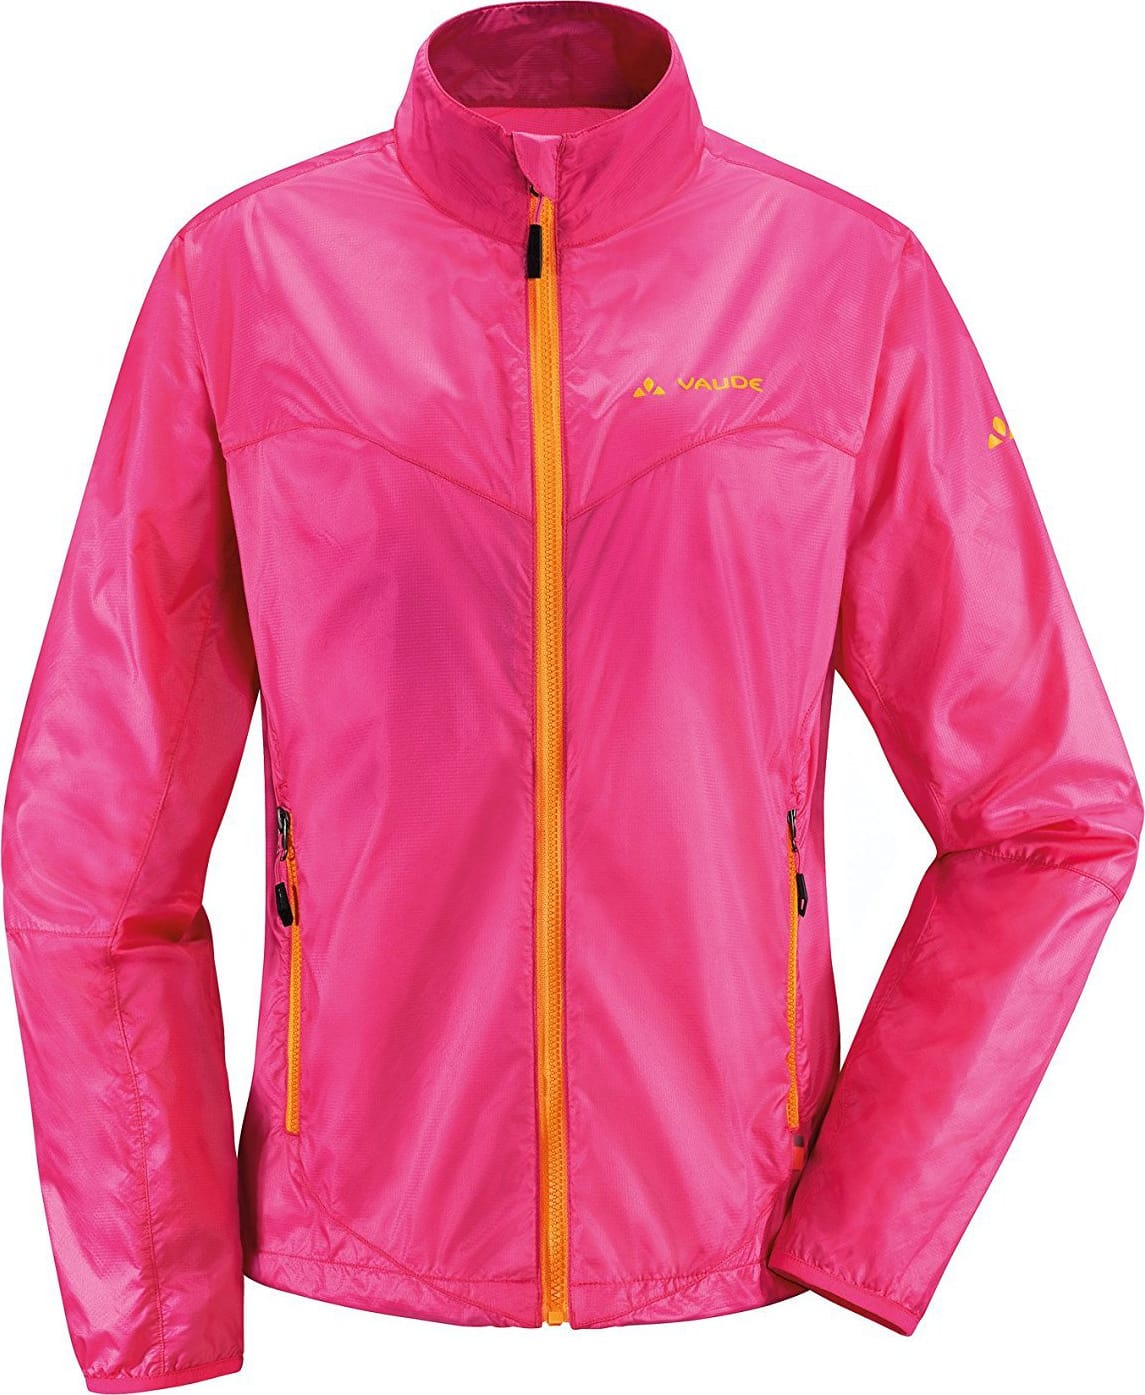 Куртка Vaude Wo Dyce Jacket женская (розовая, 36 (4600))